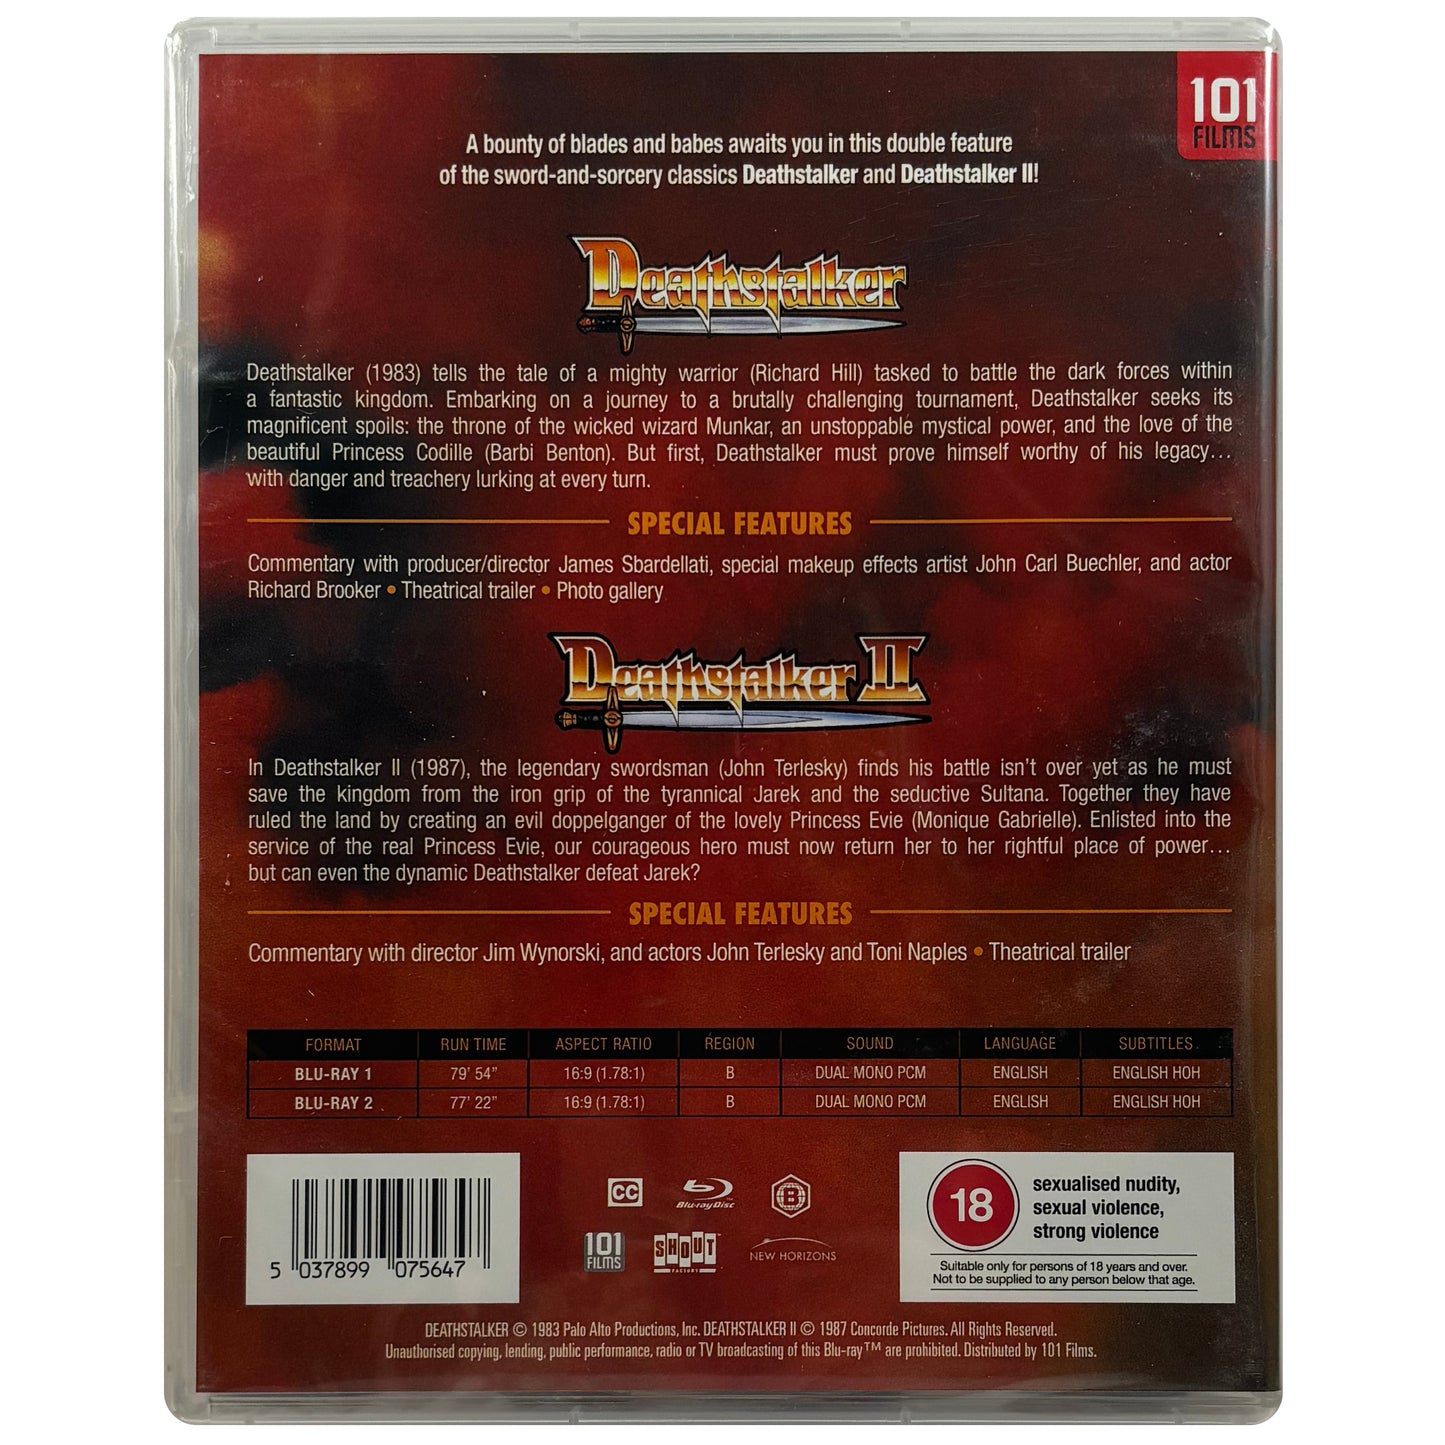 Deathstalker & Deathstalker 2 Blu-Ray